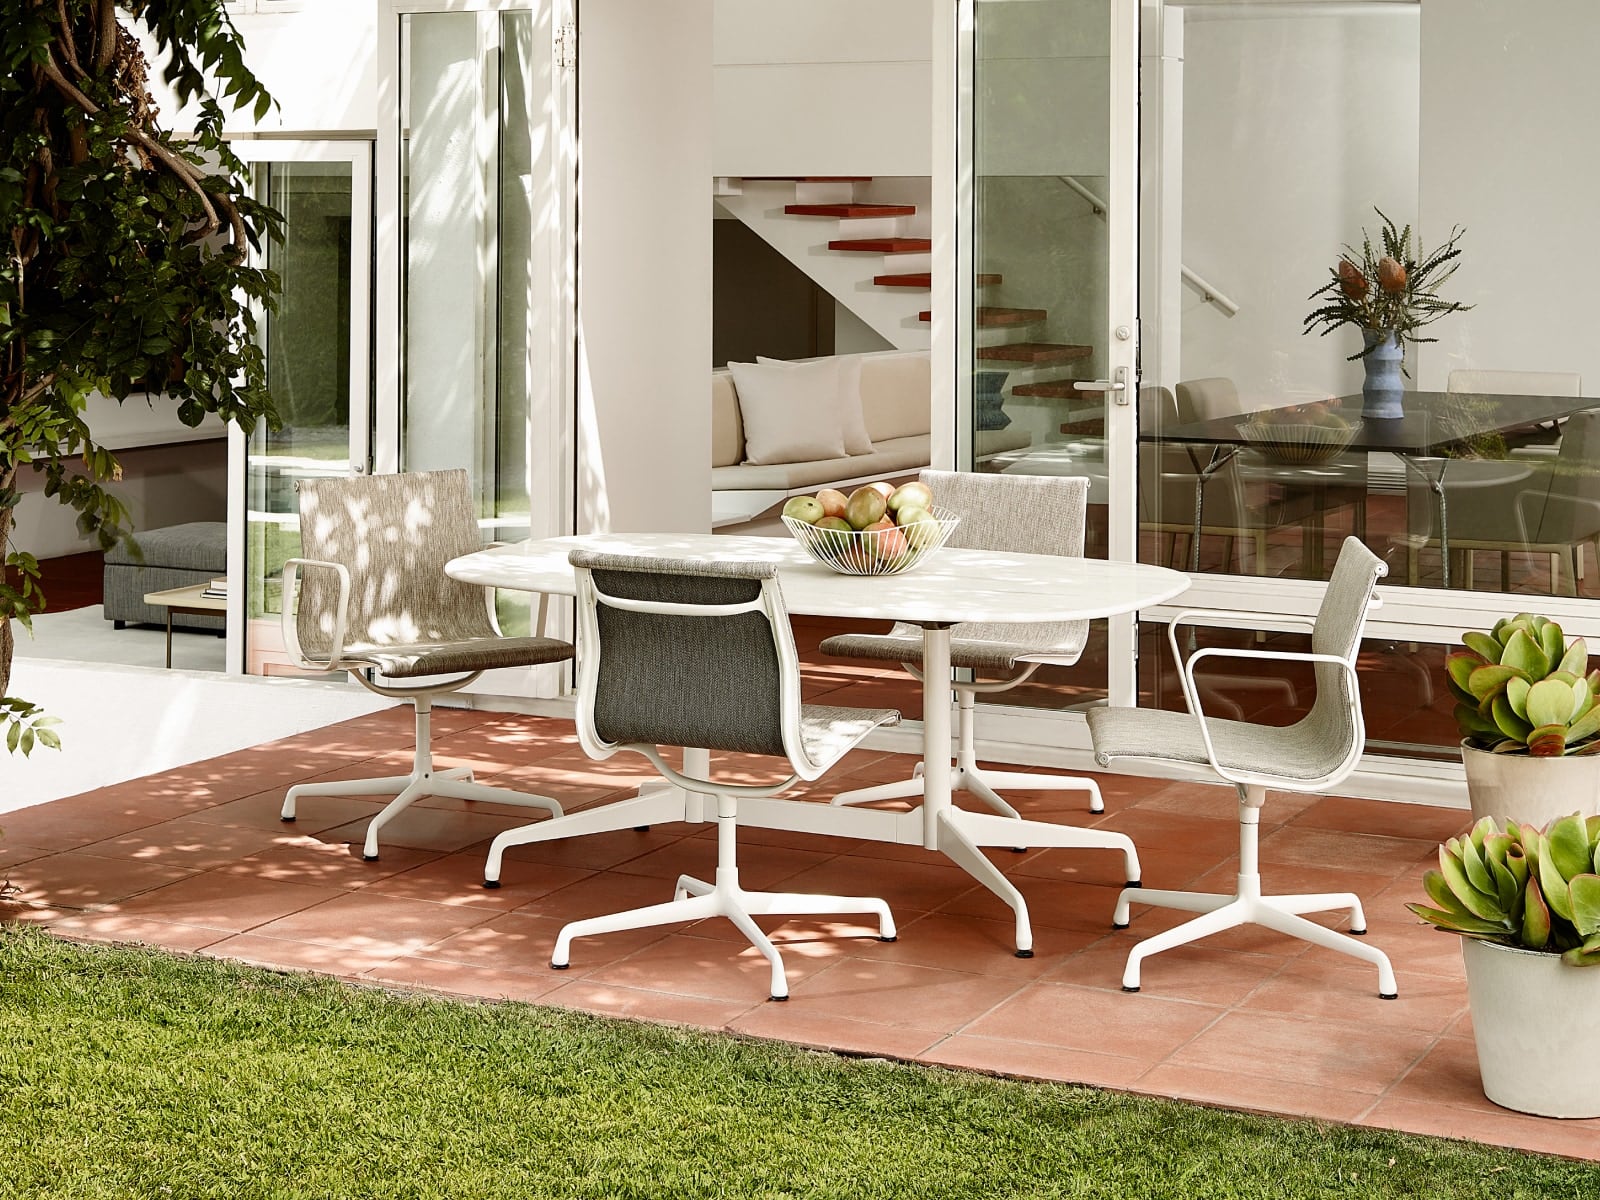 庭院中四把户外 Eames Aluminum Group 铸铝单椅，环绕一张户外 Eames 桌子。